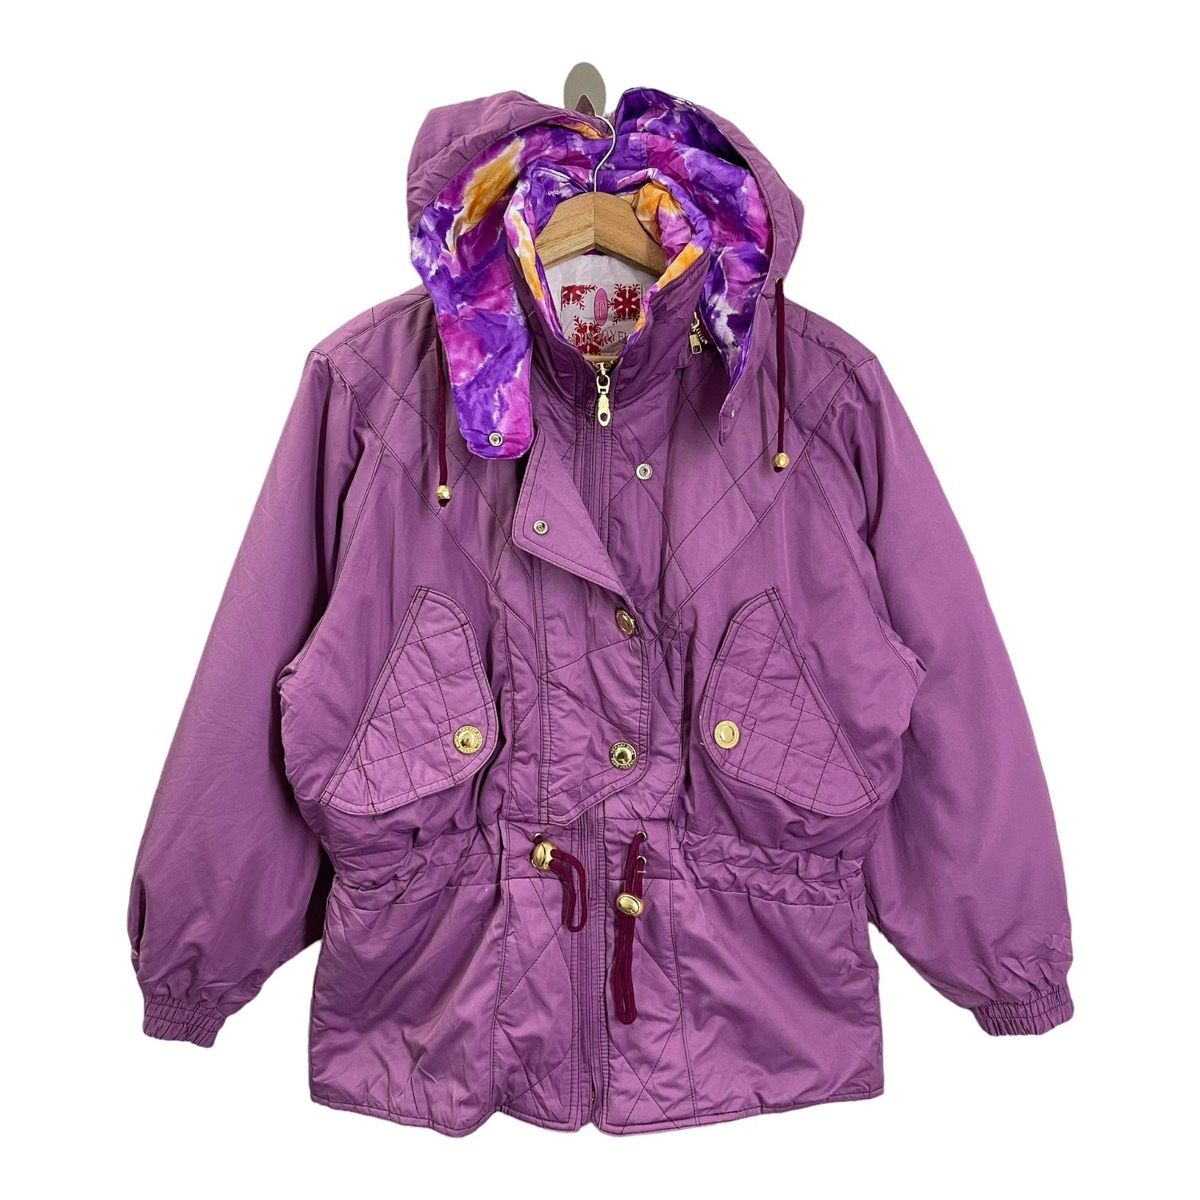 Vintage - LADIES💥 Plus Joy Ful Hoodies Ski Jacket Size M - 1